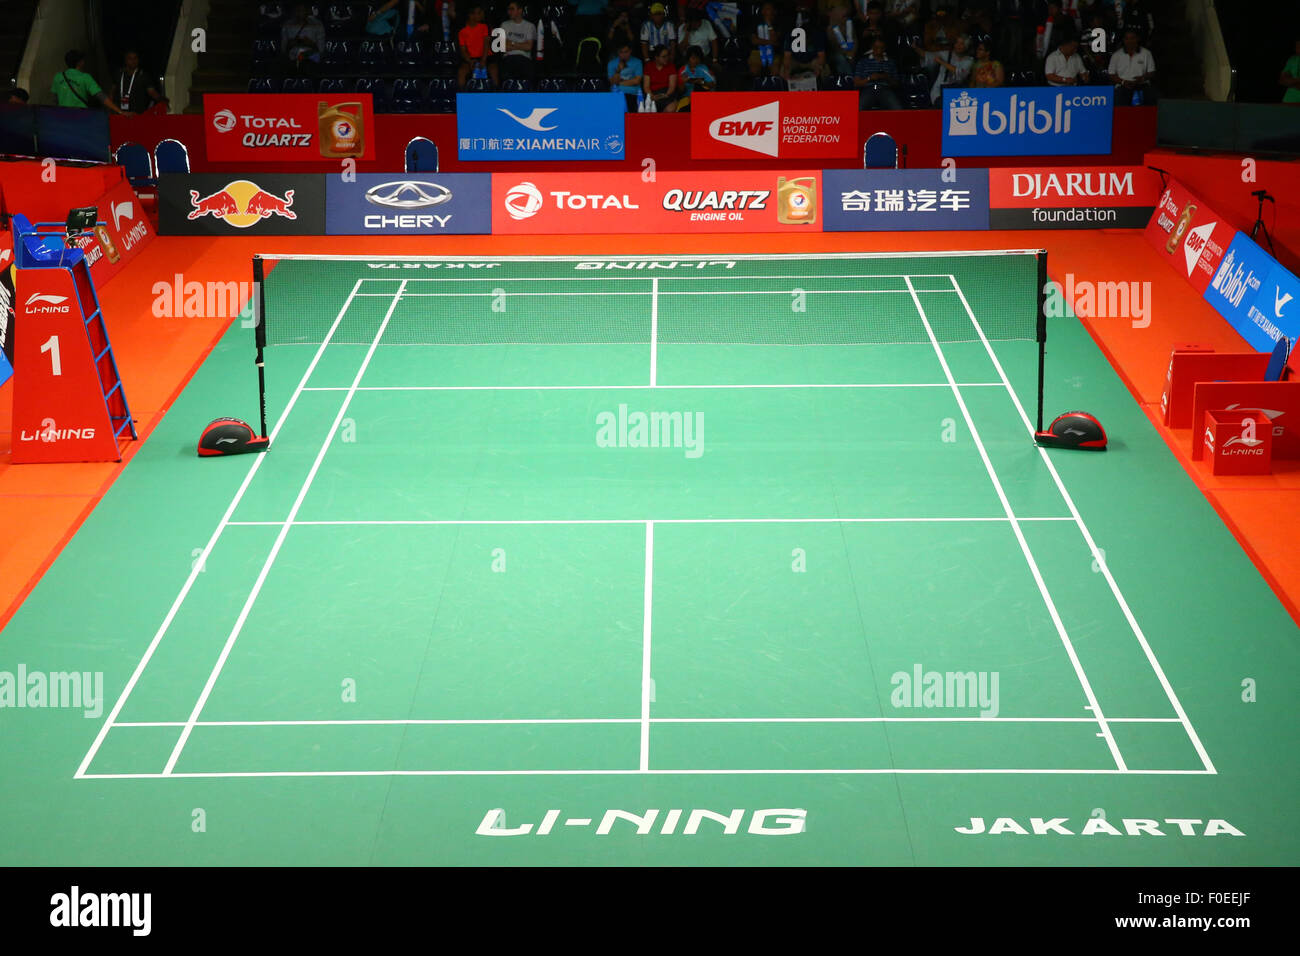 arena badminton live